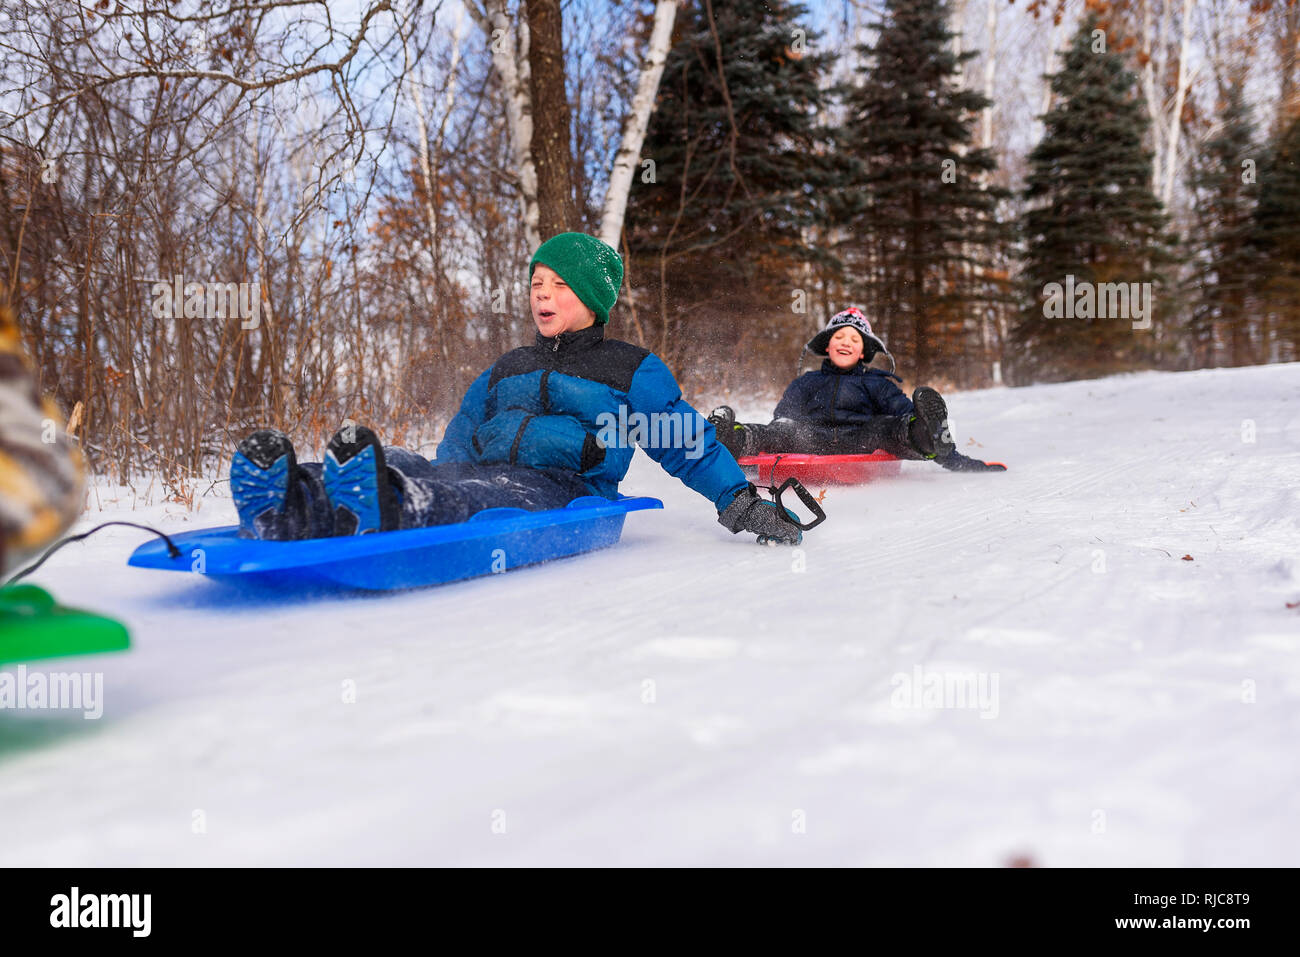 Due ragazzi su una slitta a ridere, Wisconsin, Stati Uniti Foto Stock